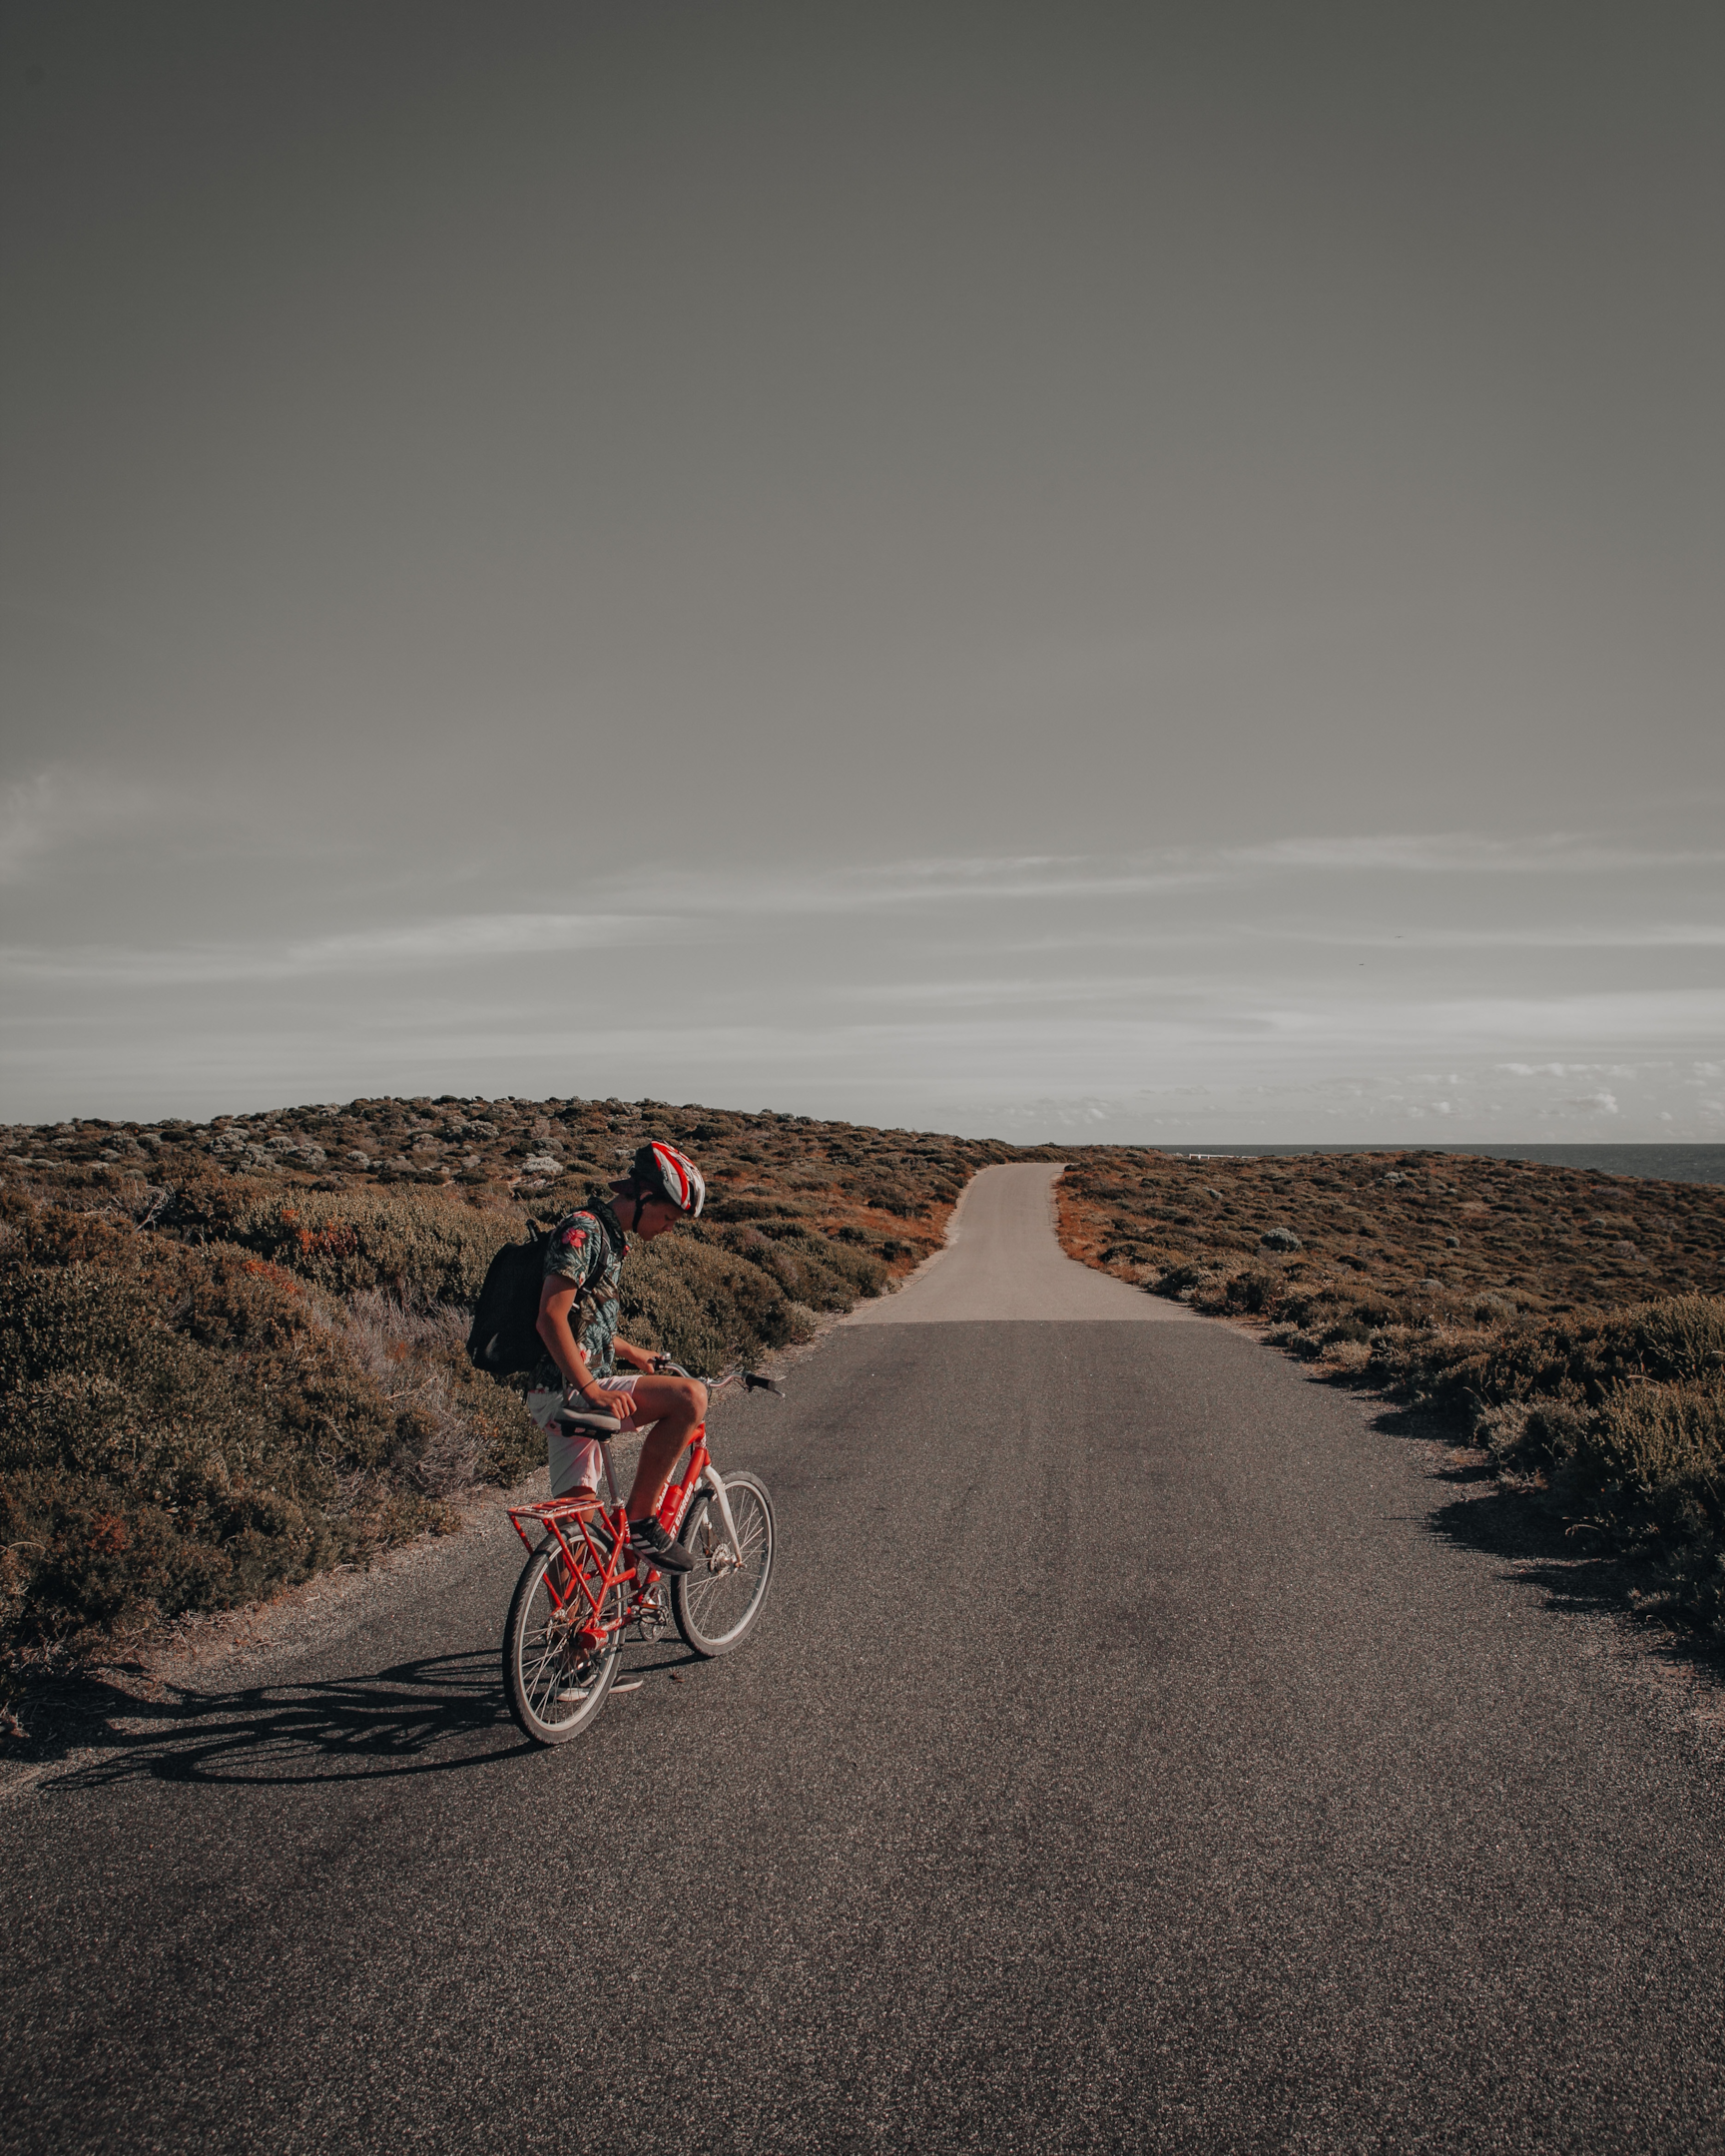 Cicloturista em estrada. Foto de Manny Moreno, Unsplash.